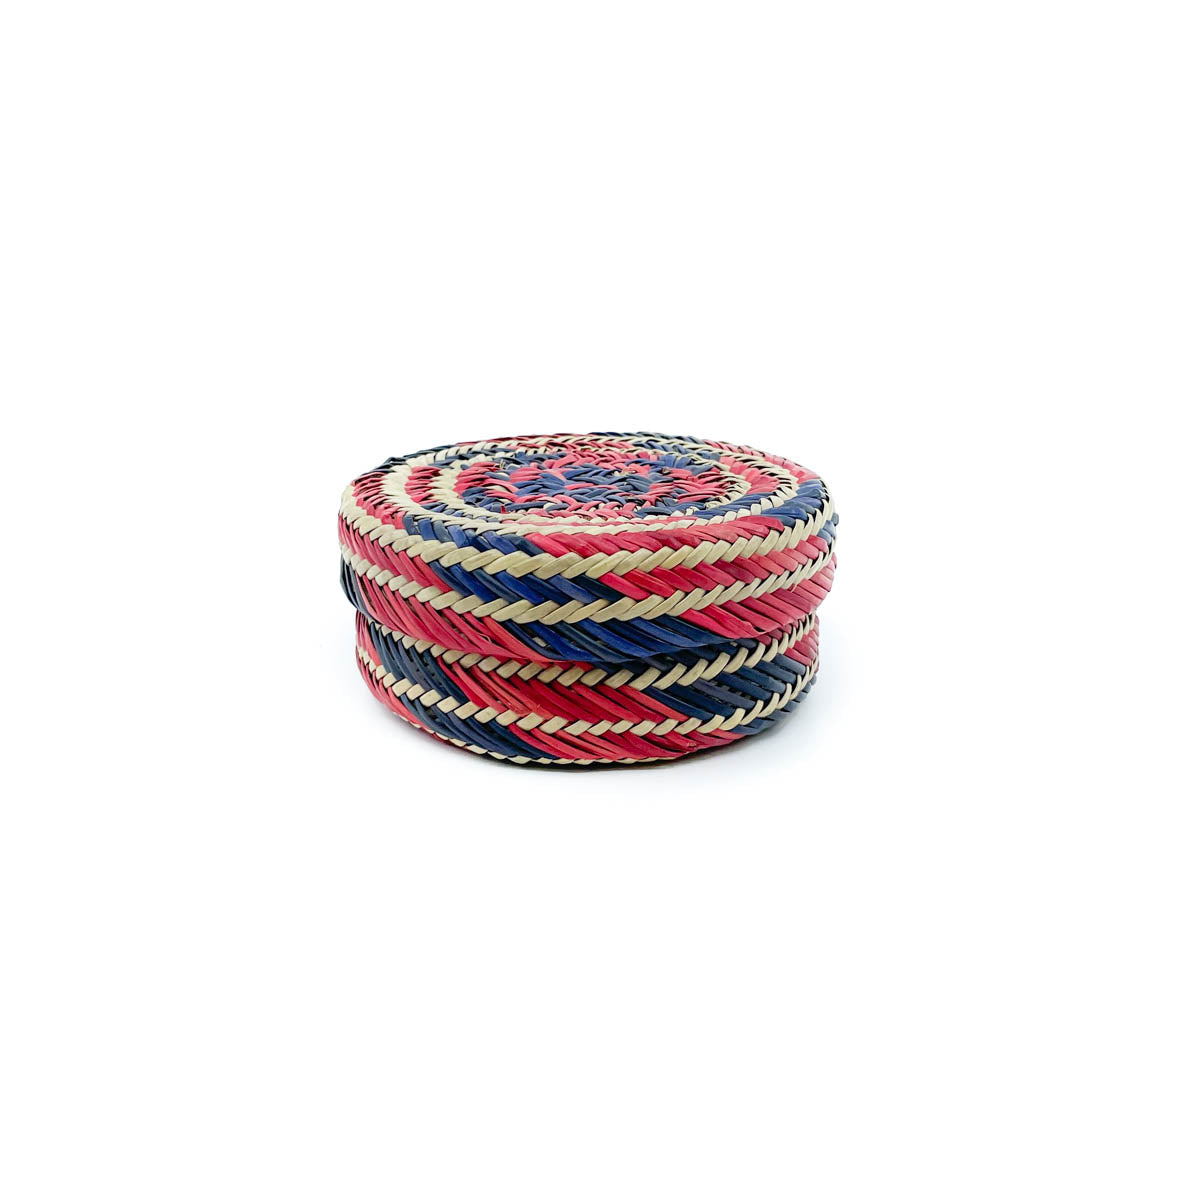 Rarámuri (Tarahumara) Pine Needle Lidded Basket - Small